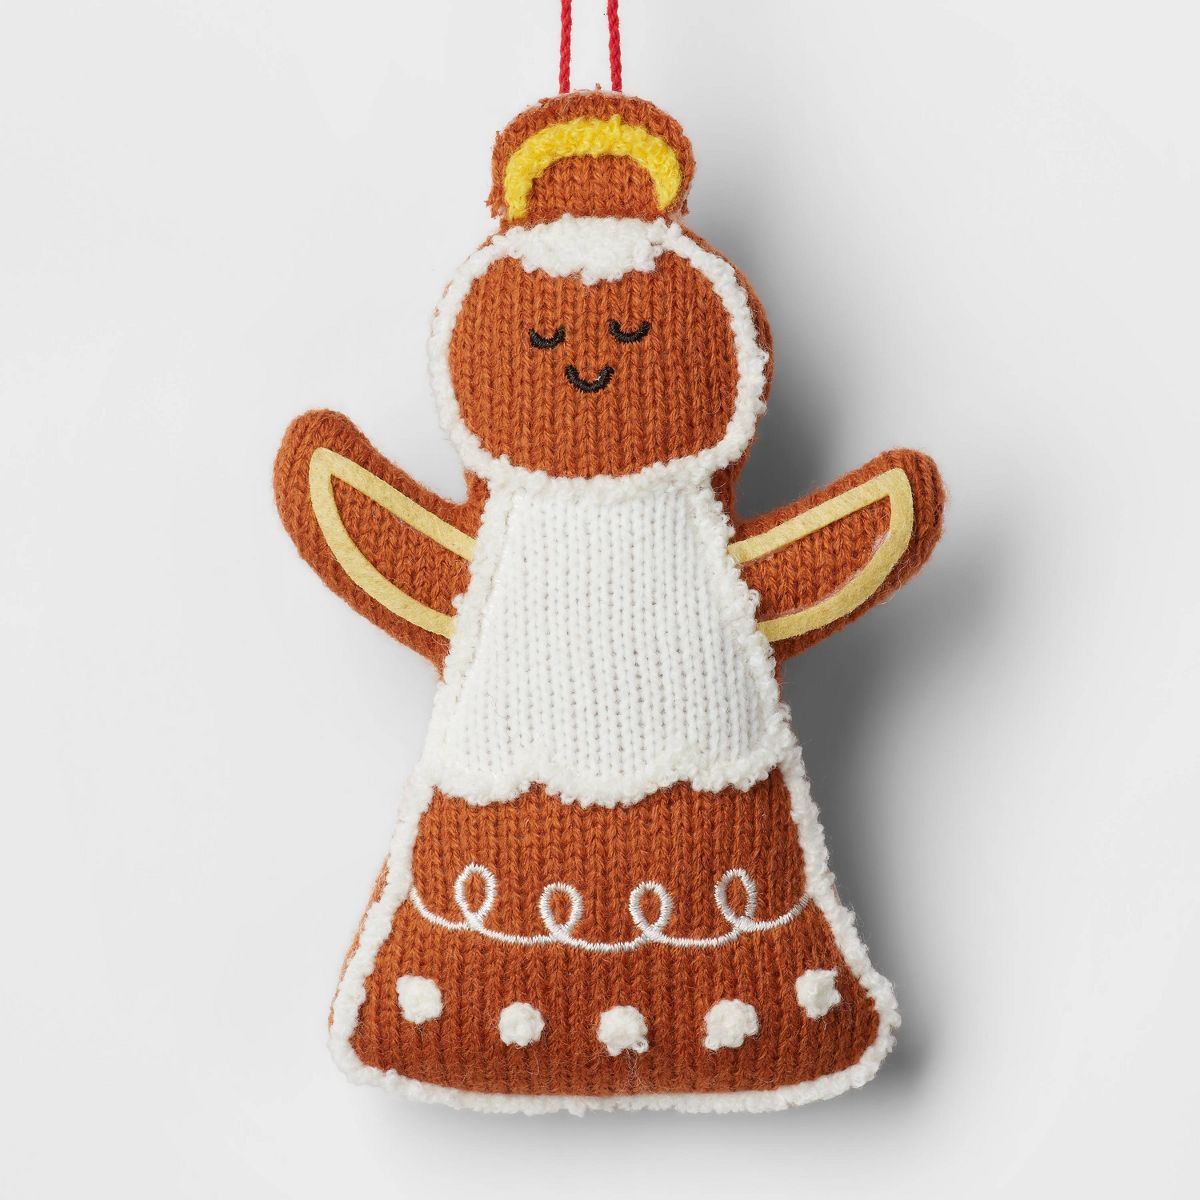 Knit Gingerbread Angel Christmas Tree Ornament Brown/White - Wondershop™ | Target